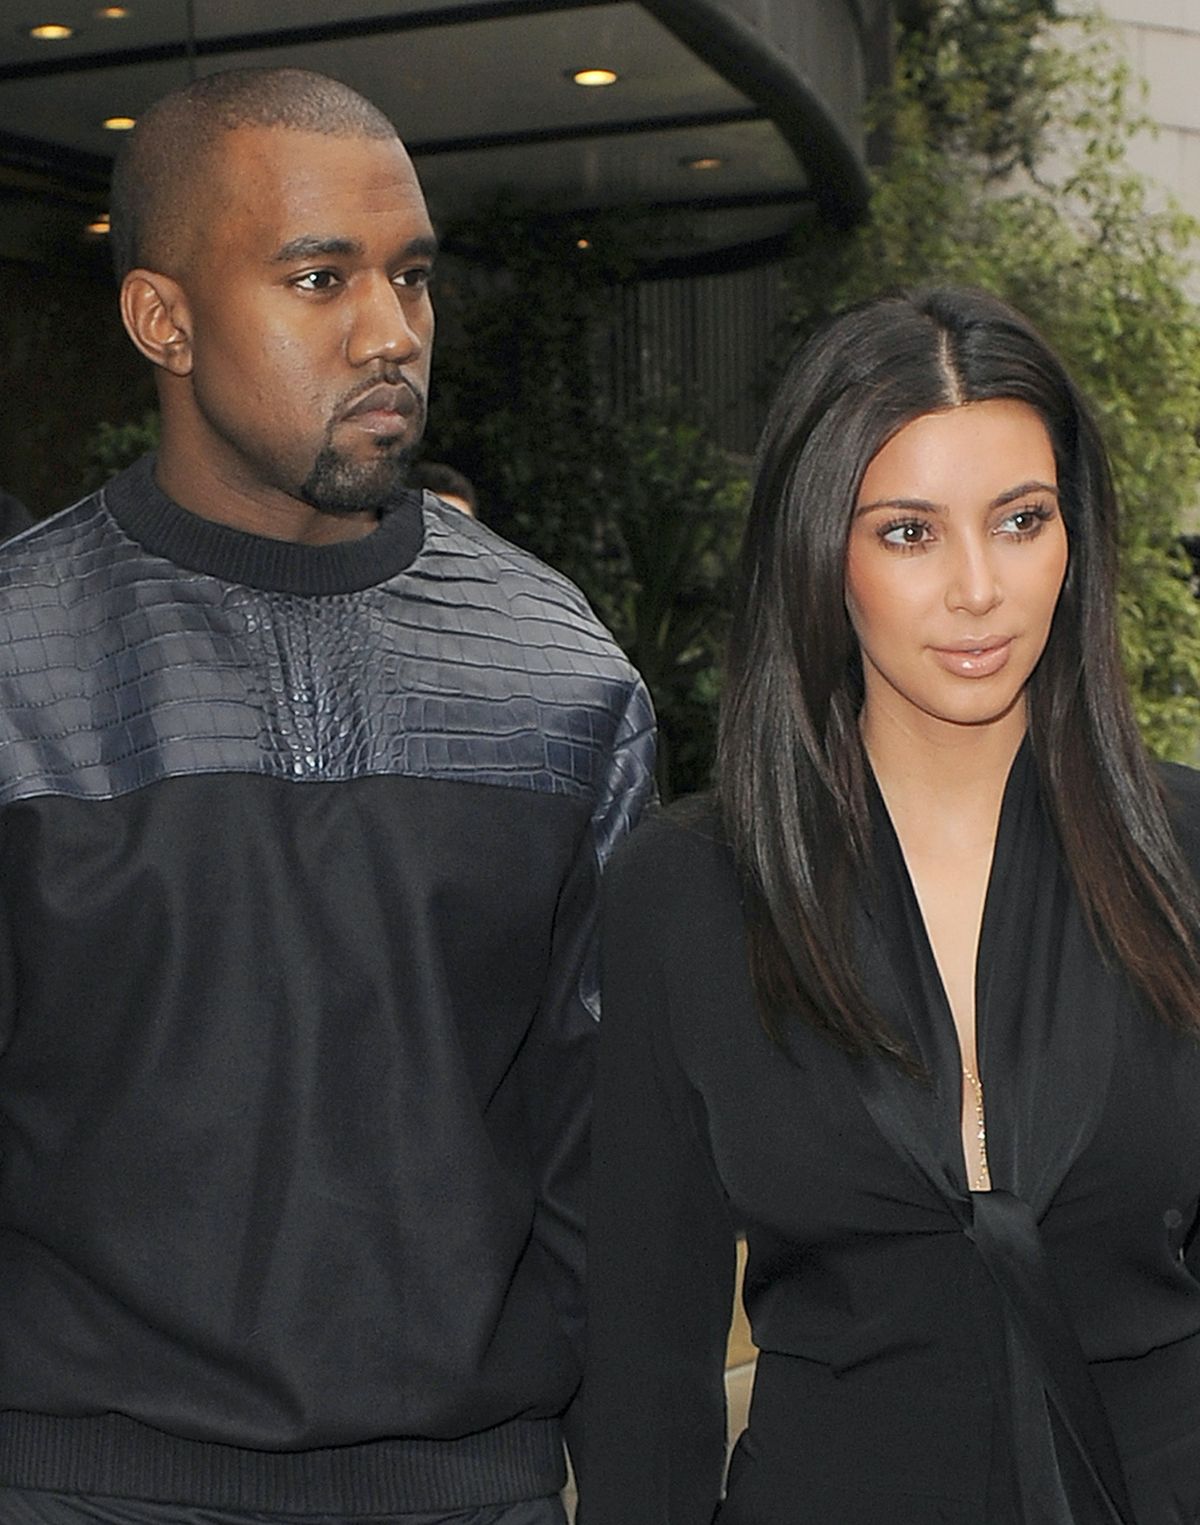 Se pare că Kim Kardashian și Kanye West nu sunt în condiții de vorbire